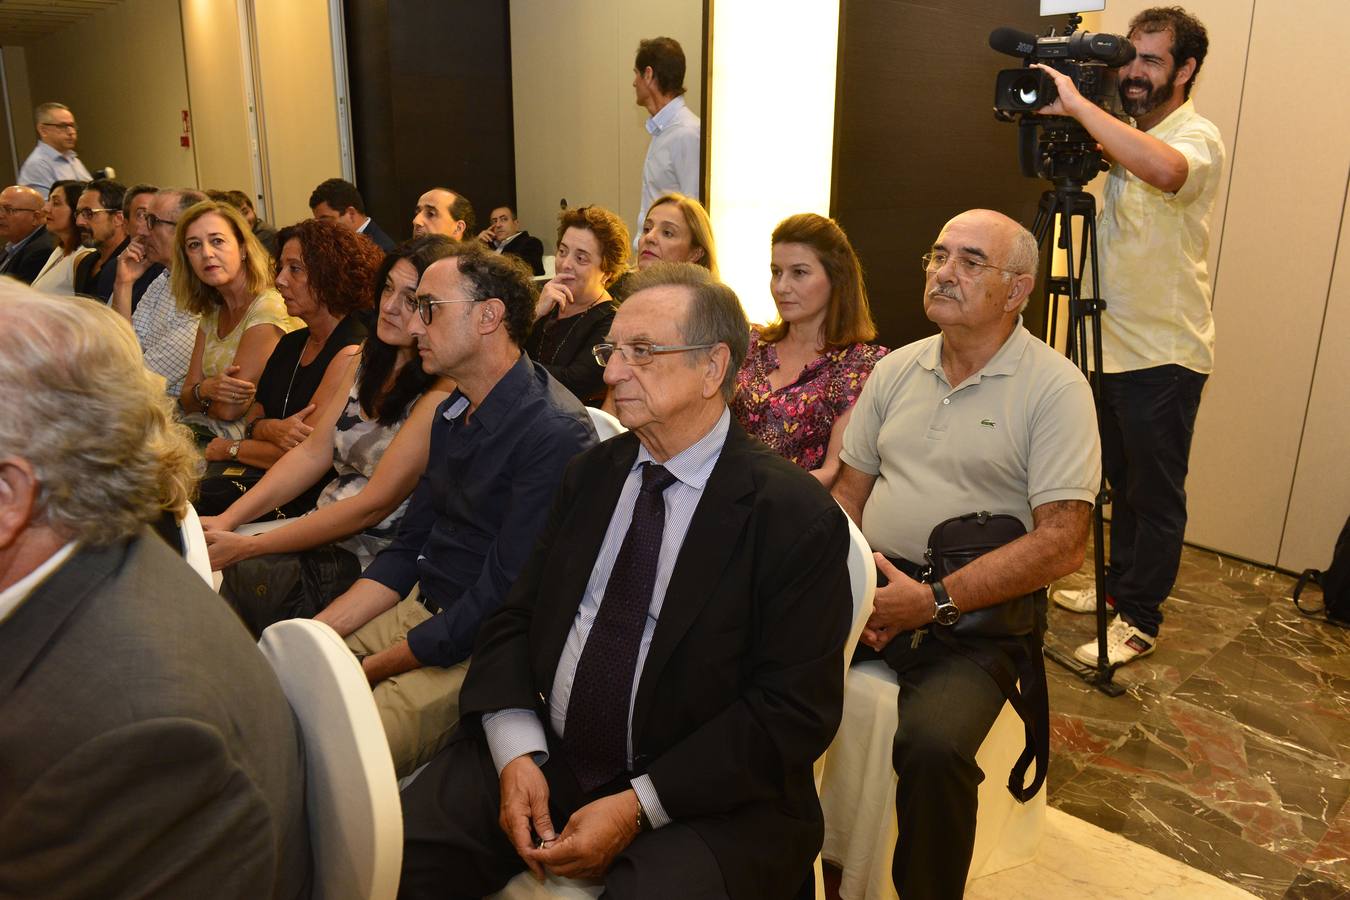 El jefe de Local de 'La Verdad' presentó en el Hotel Occidental Murcia Siete Coronas su libro 'Pioneros', que retrata las trayectorias de grandes empresarios hortofrutícolas.